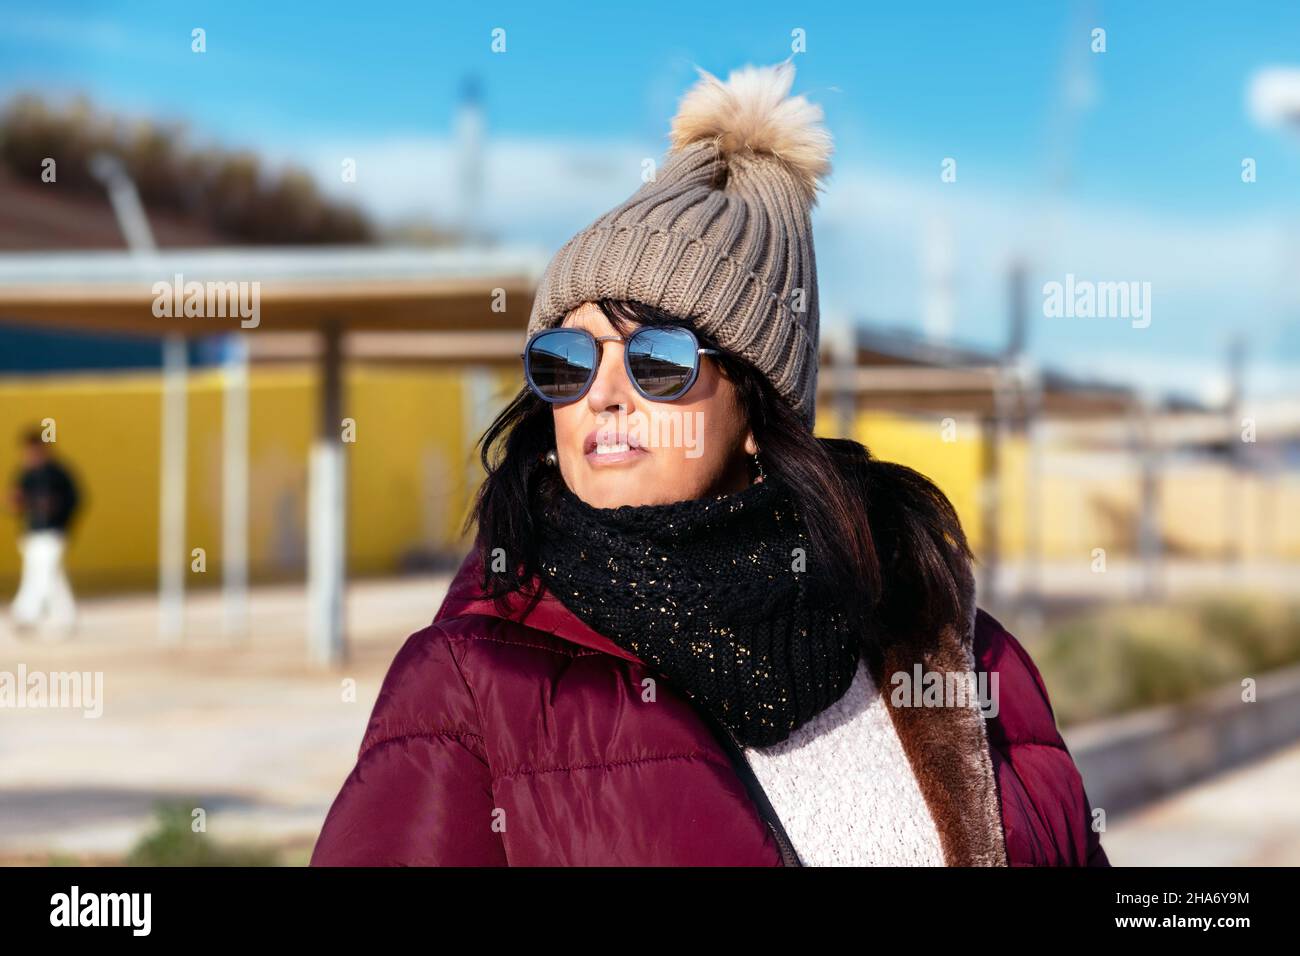 sonriente joven mujer en gorro lana gorra y Gafas de sol calentamiento  arriba en nieve 31606934 Foto de stock en Vecteezy